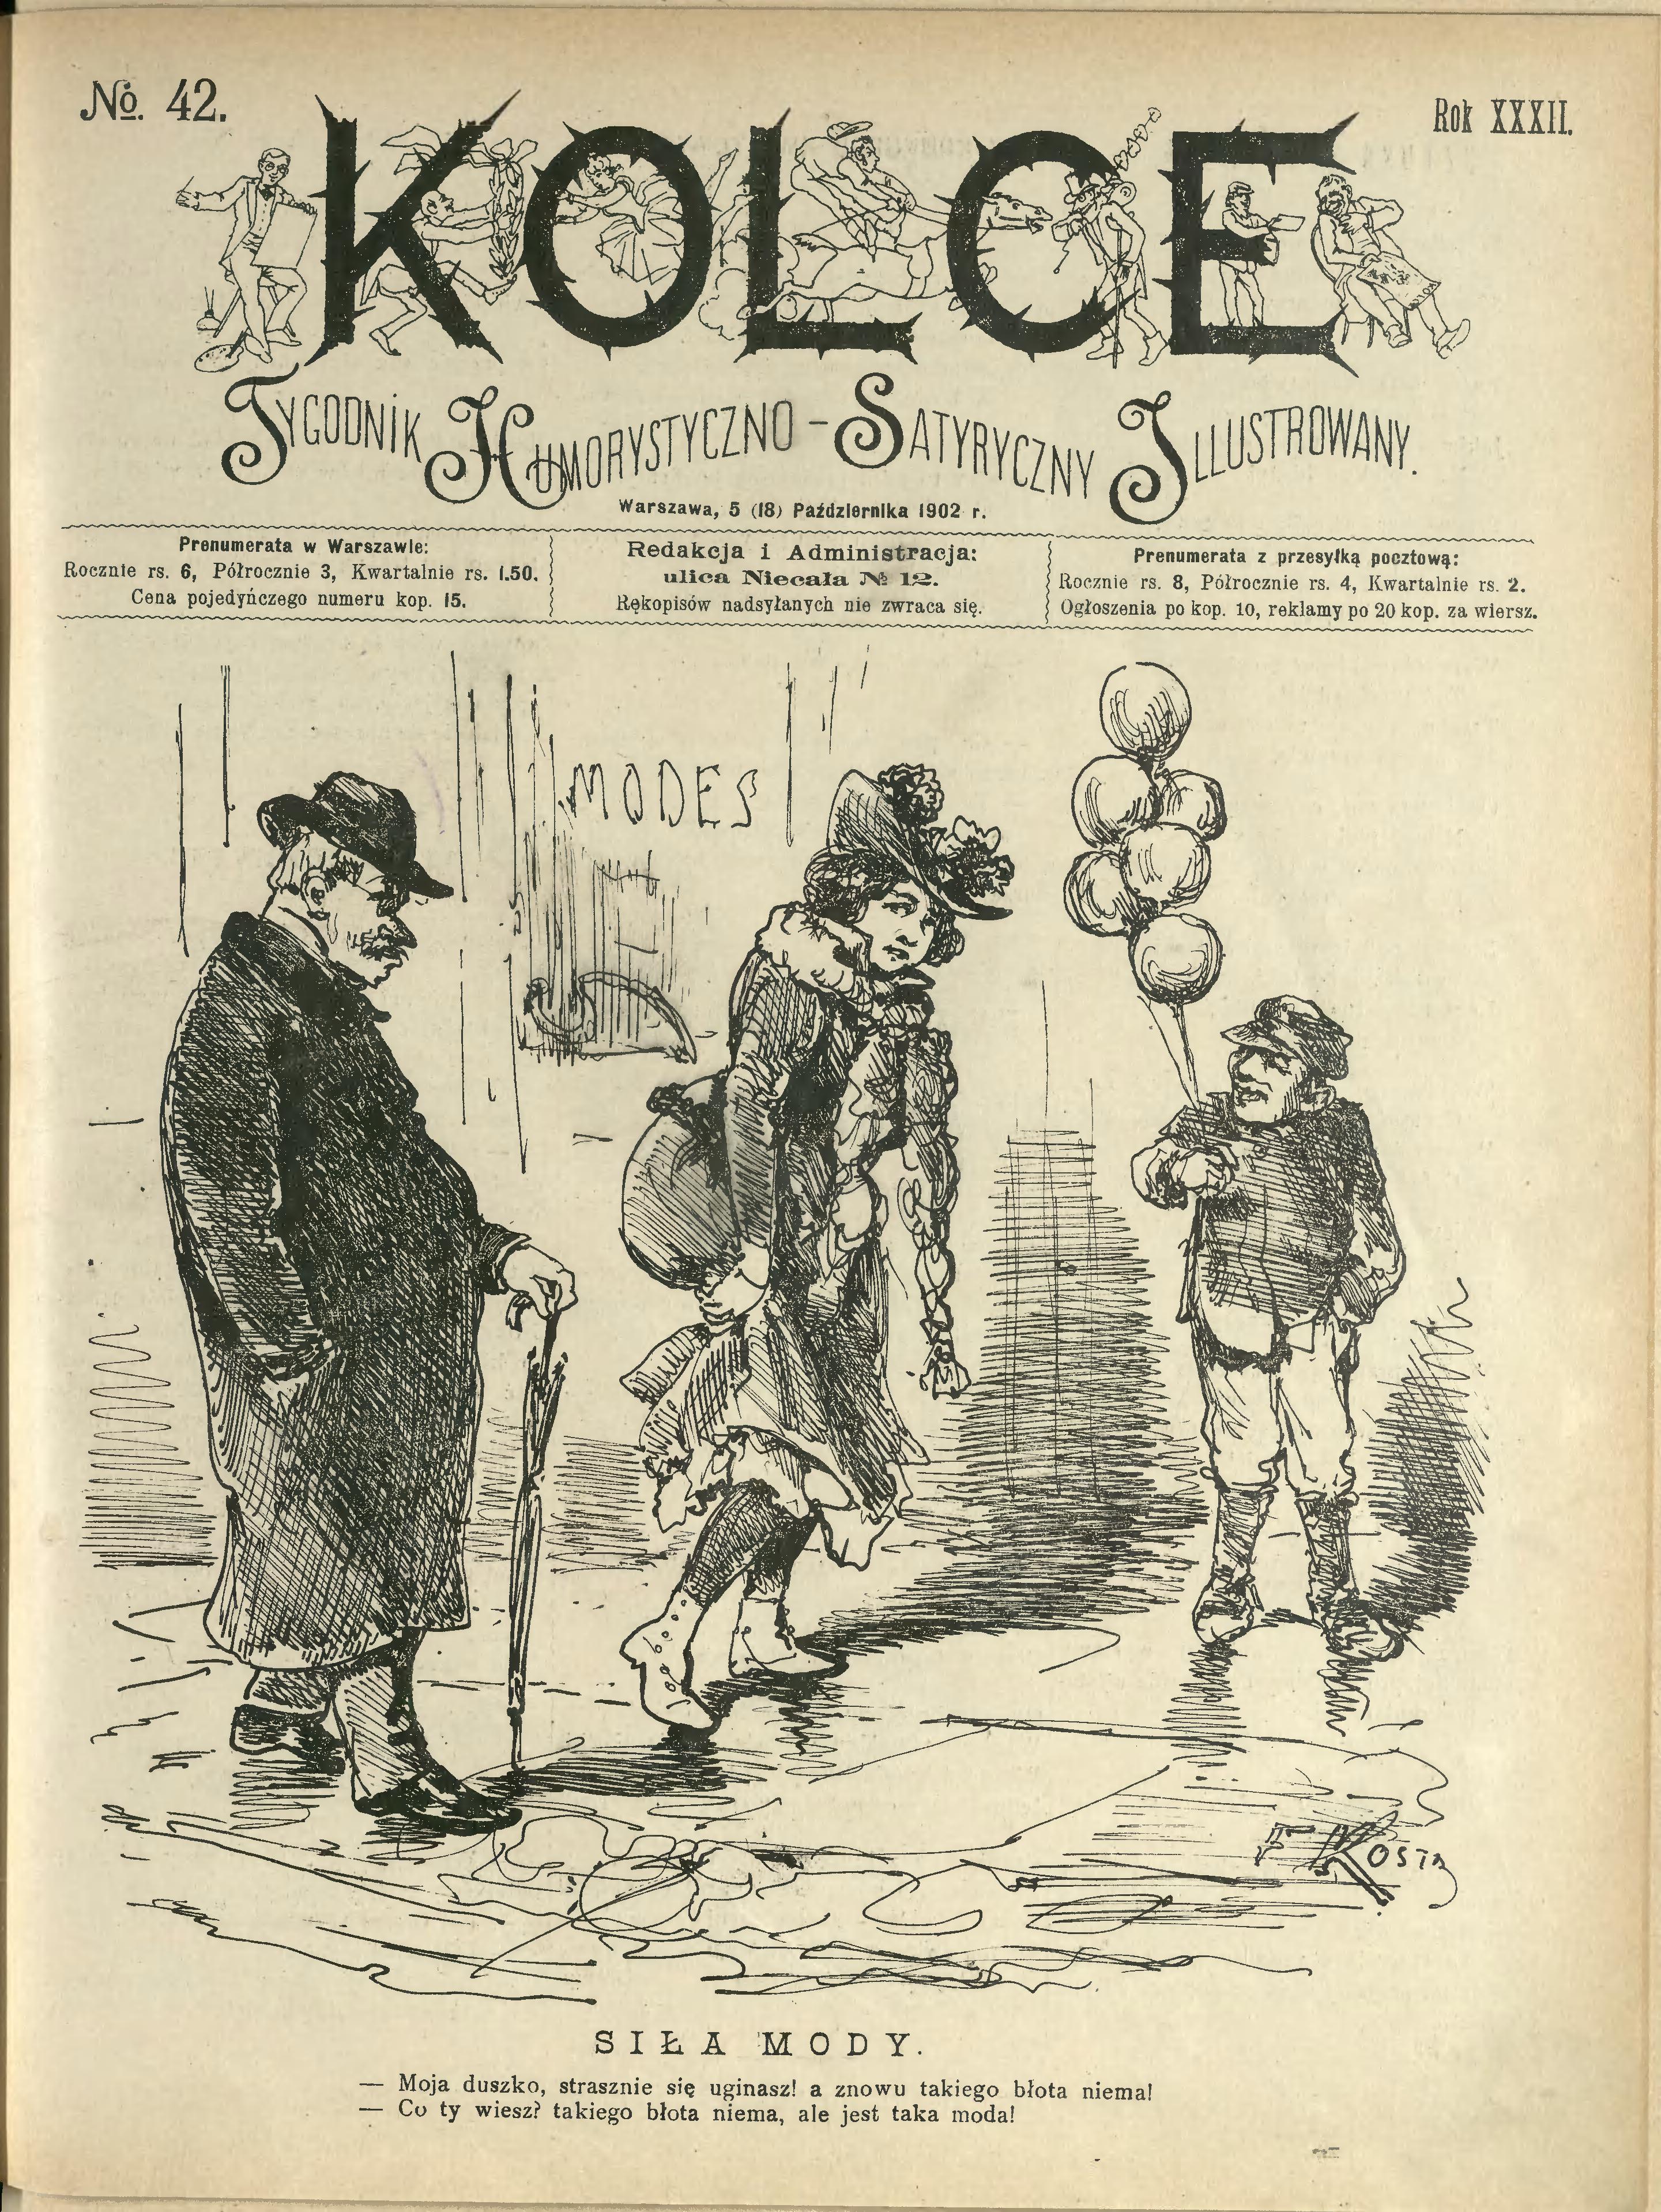 Ilustracje na okładkach czasopisma „Kolce” z roku 1902, w których publikował Witold Wojtkiewicz, źródło: biblioteka cyfrowa Uniwersytetu Warszawskiego